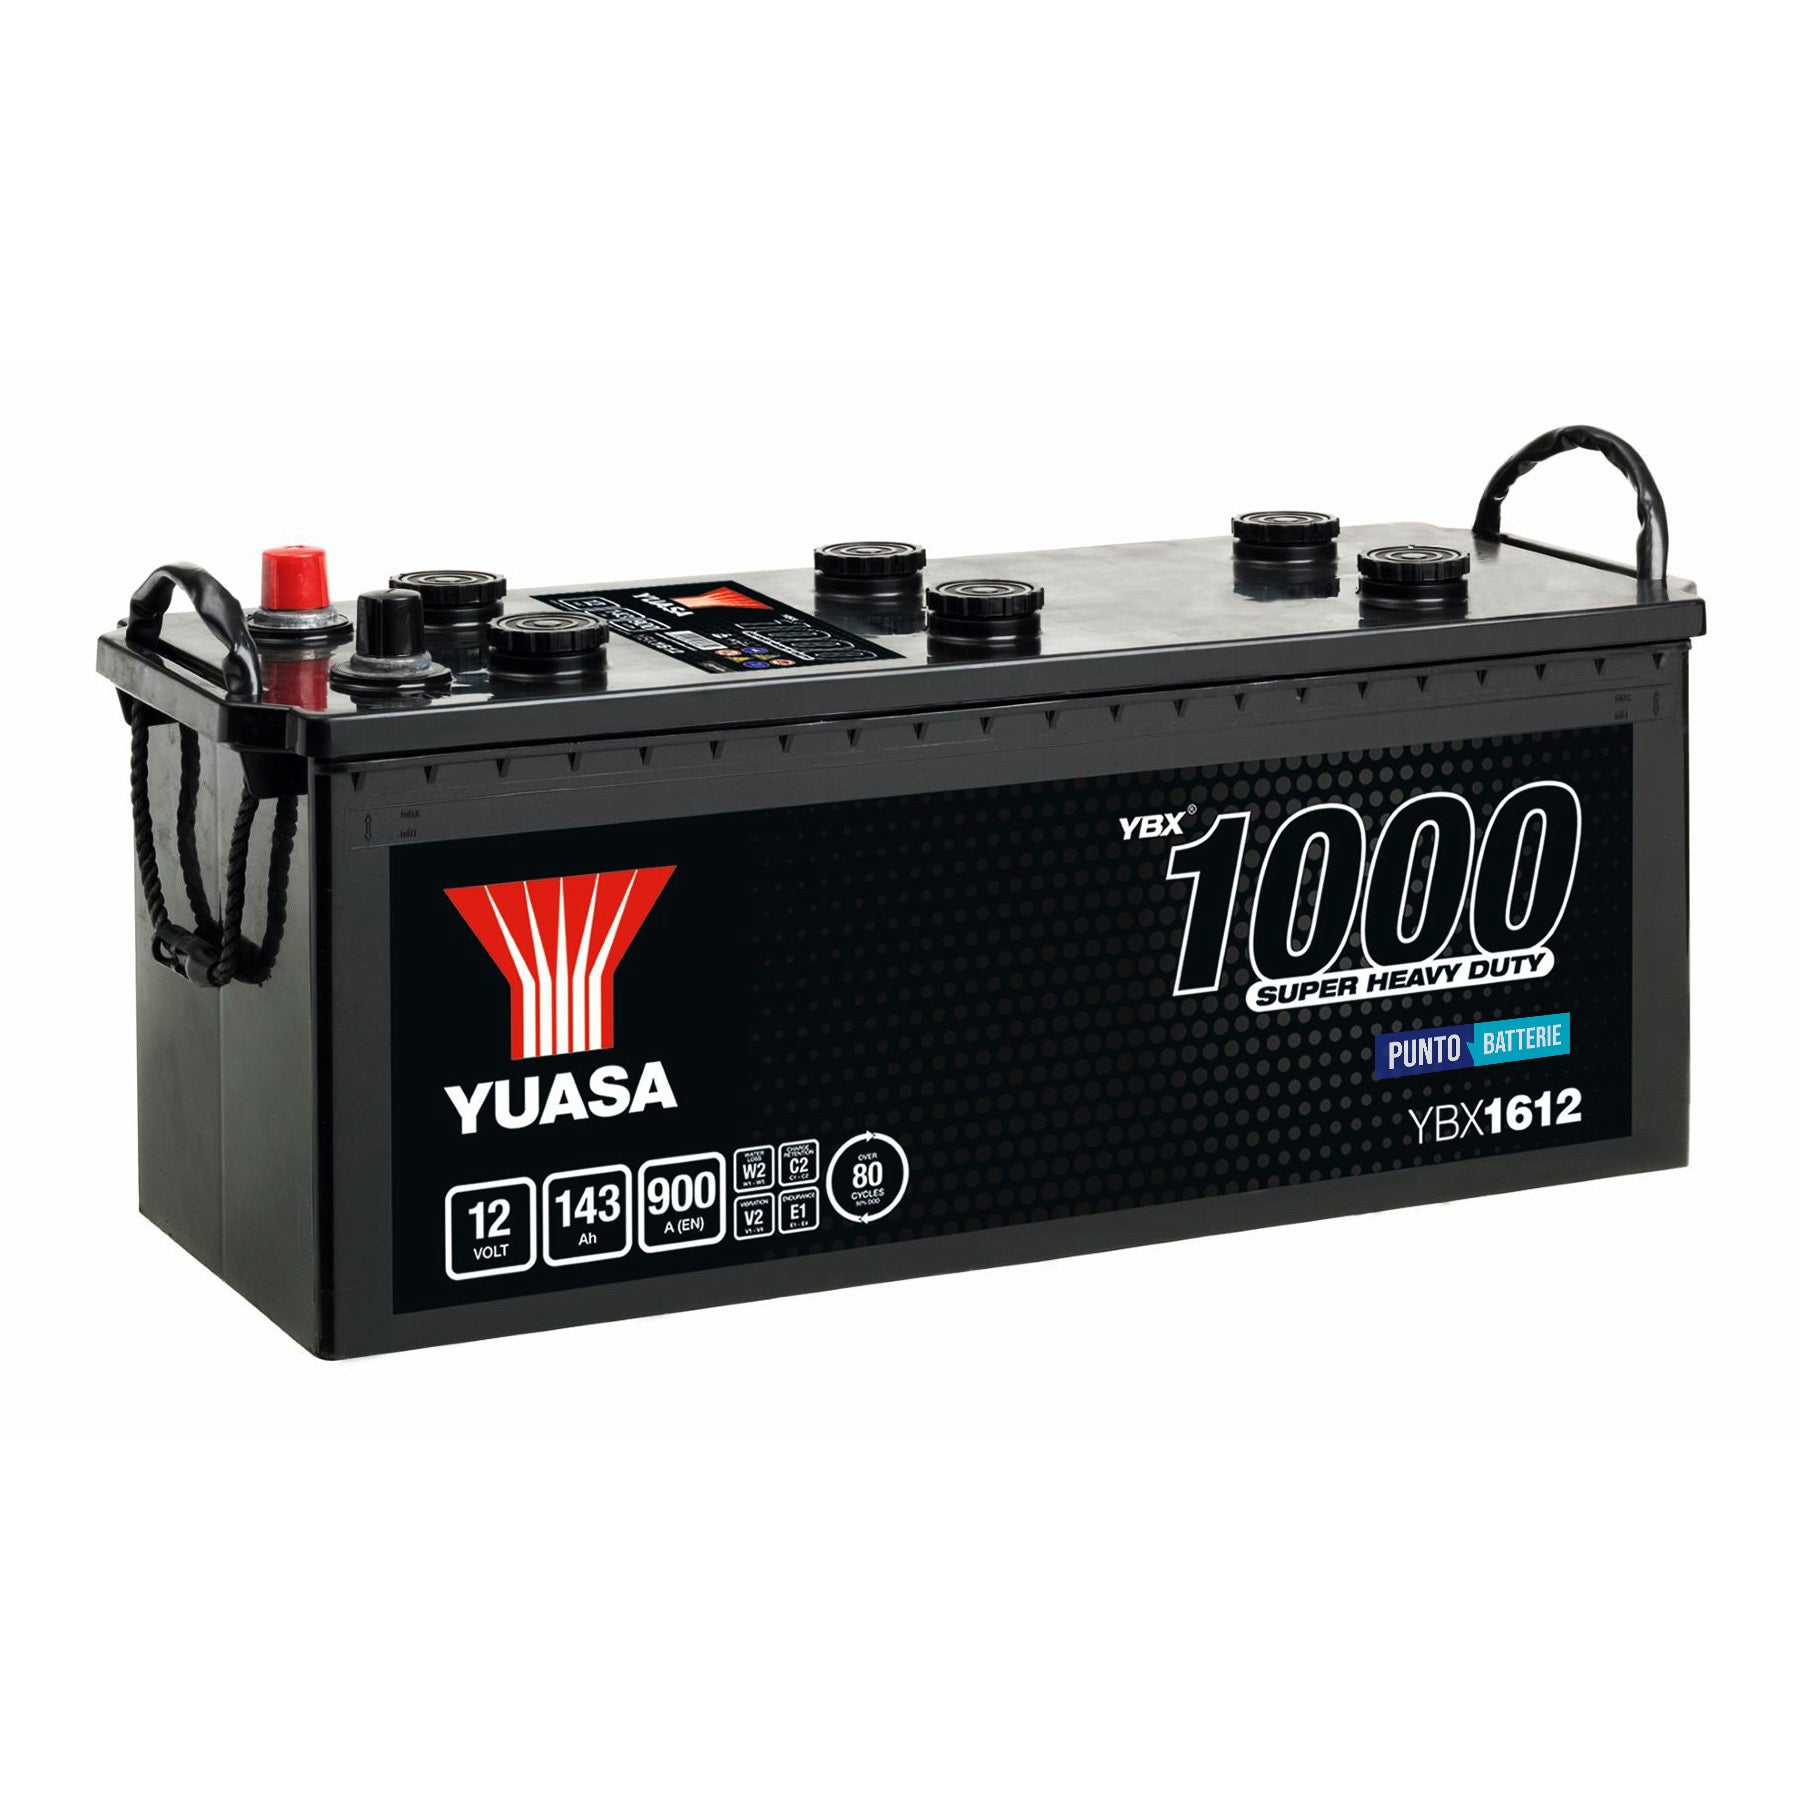 Batteria originale Yuasa YBX1000 YBX1612, dimensioni 513 x 189 x 223, polo positivo a sinistra, 12 volt, 143 amperora, 900 ampere. Batteria per camion e veicoli pesanti.